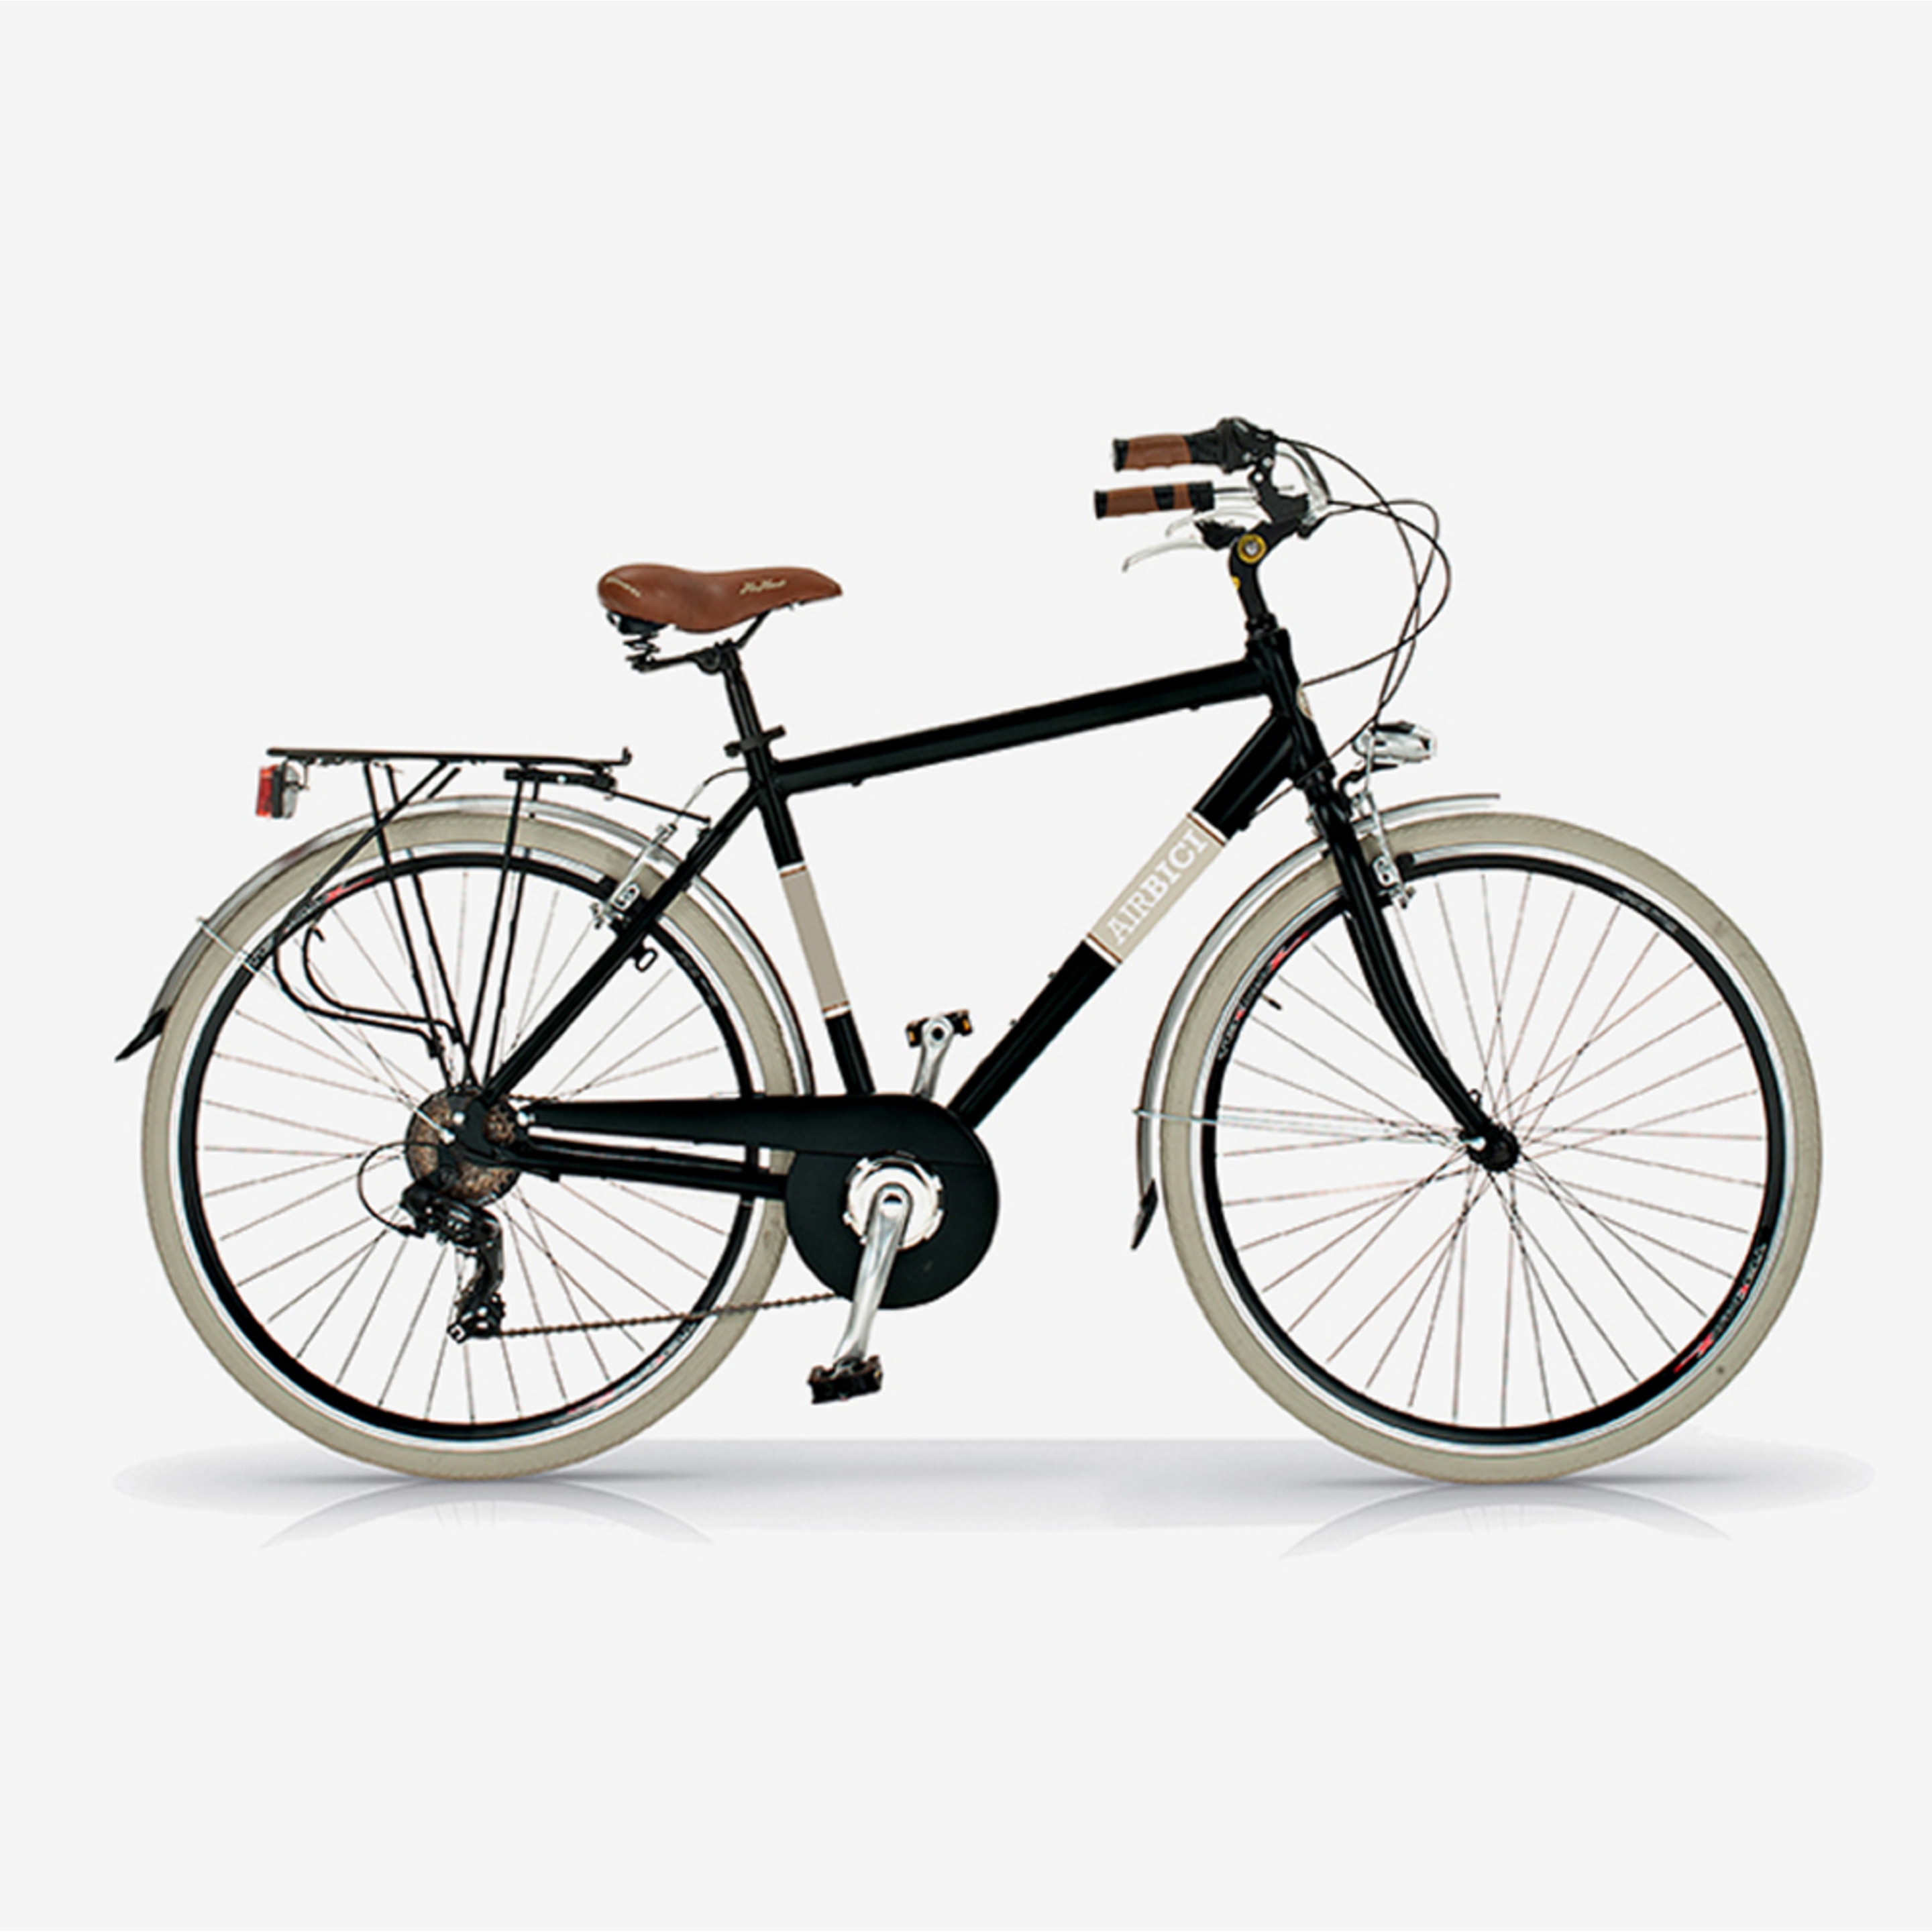 Bicicleta De Ciudad  Airbici 605am Elegance - Negro - Vintage, paseo, ciudad  MKP